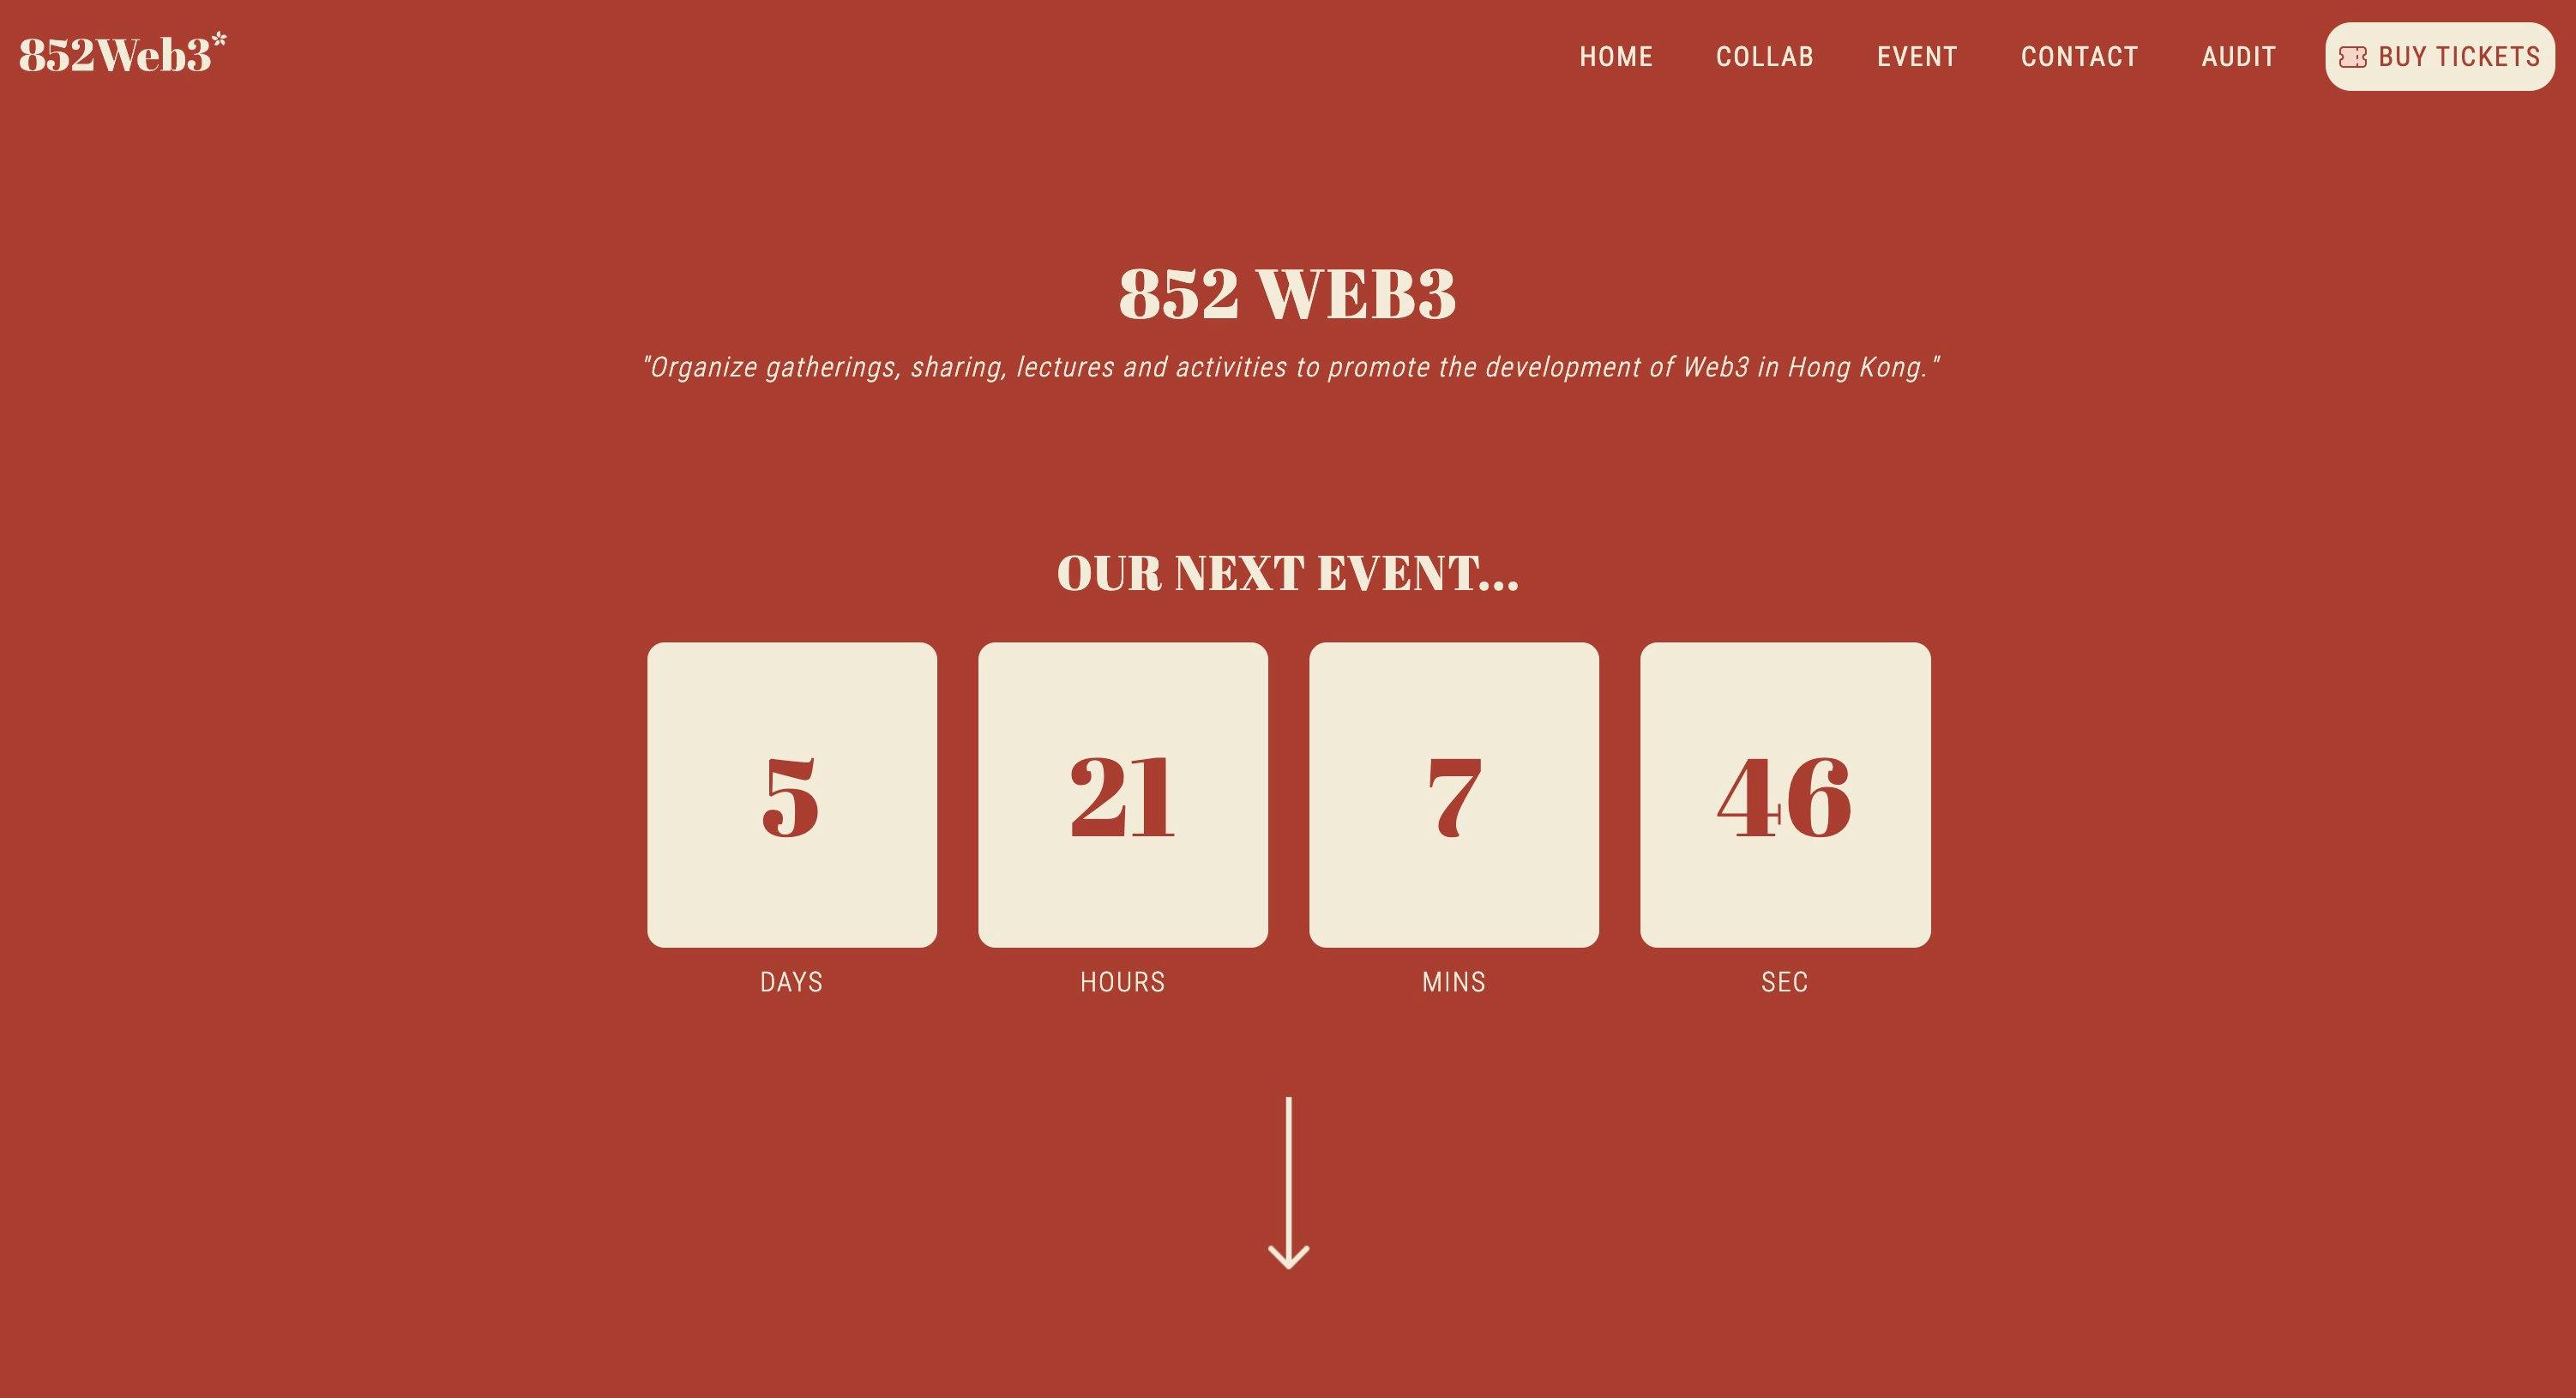 852Web3 網站